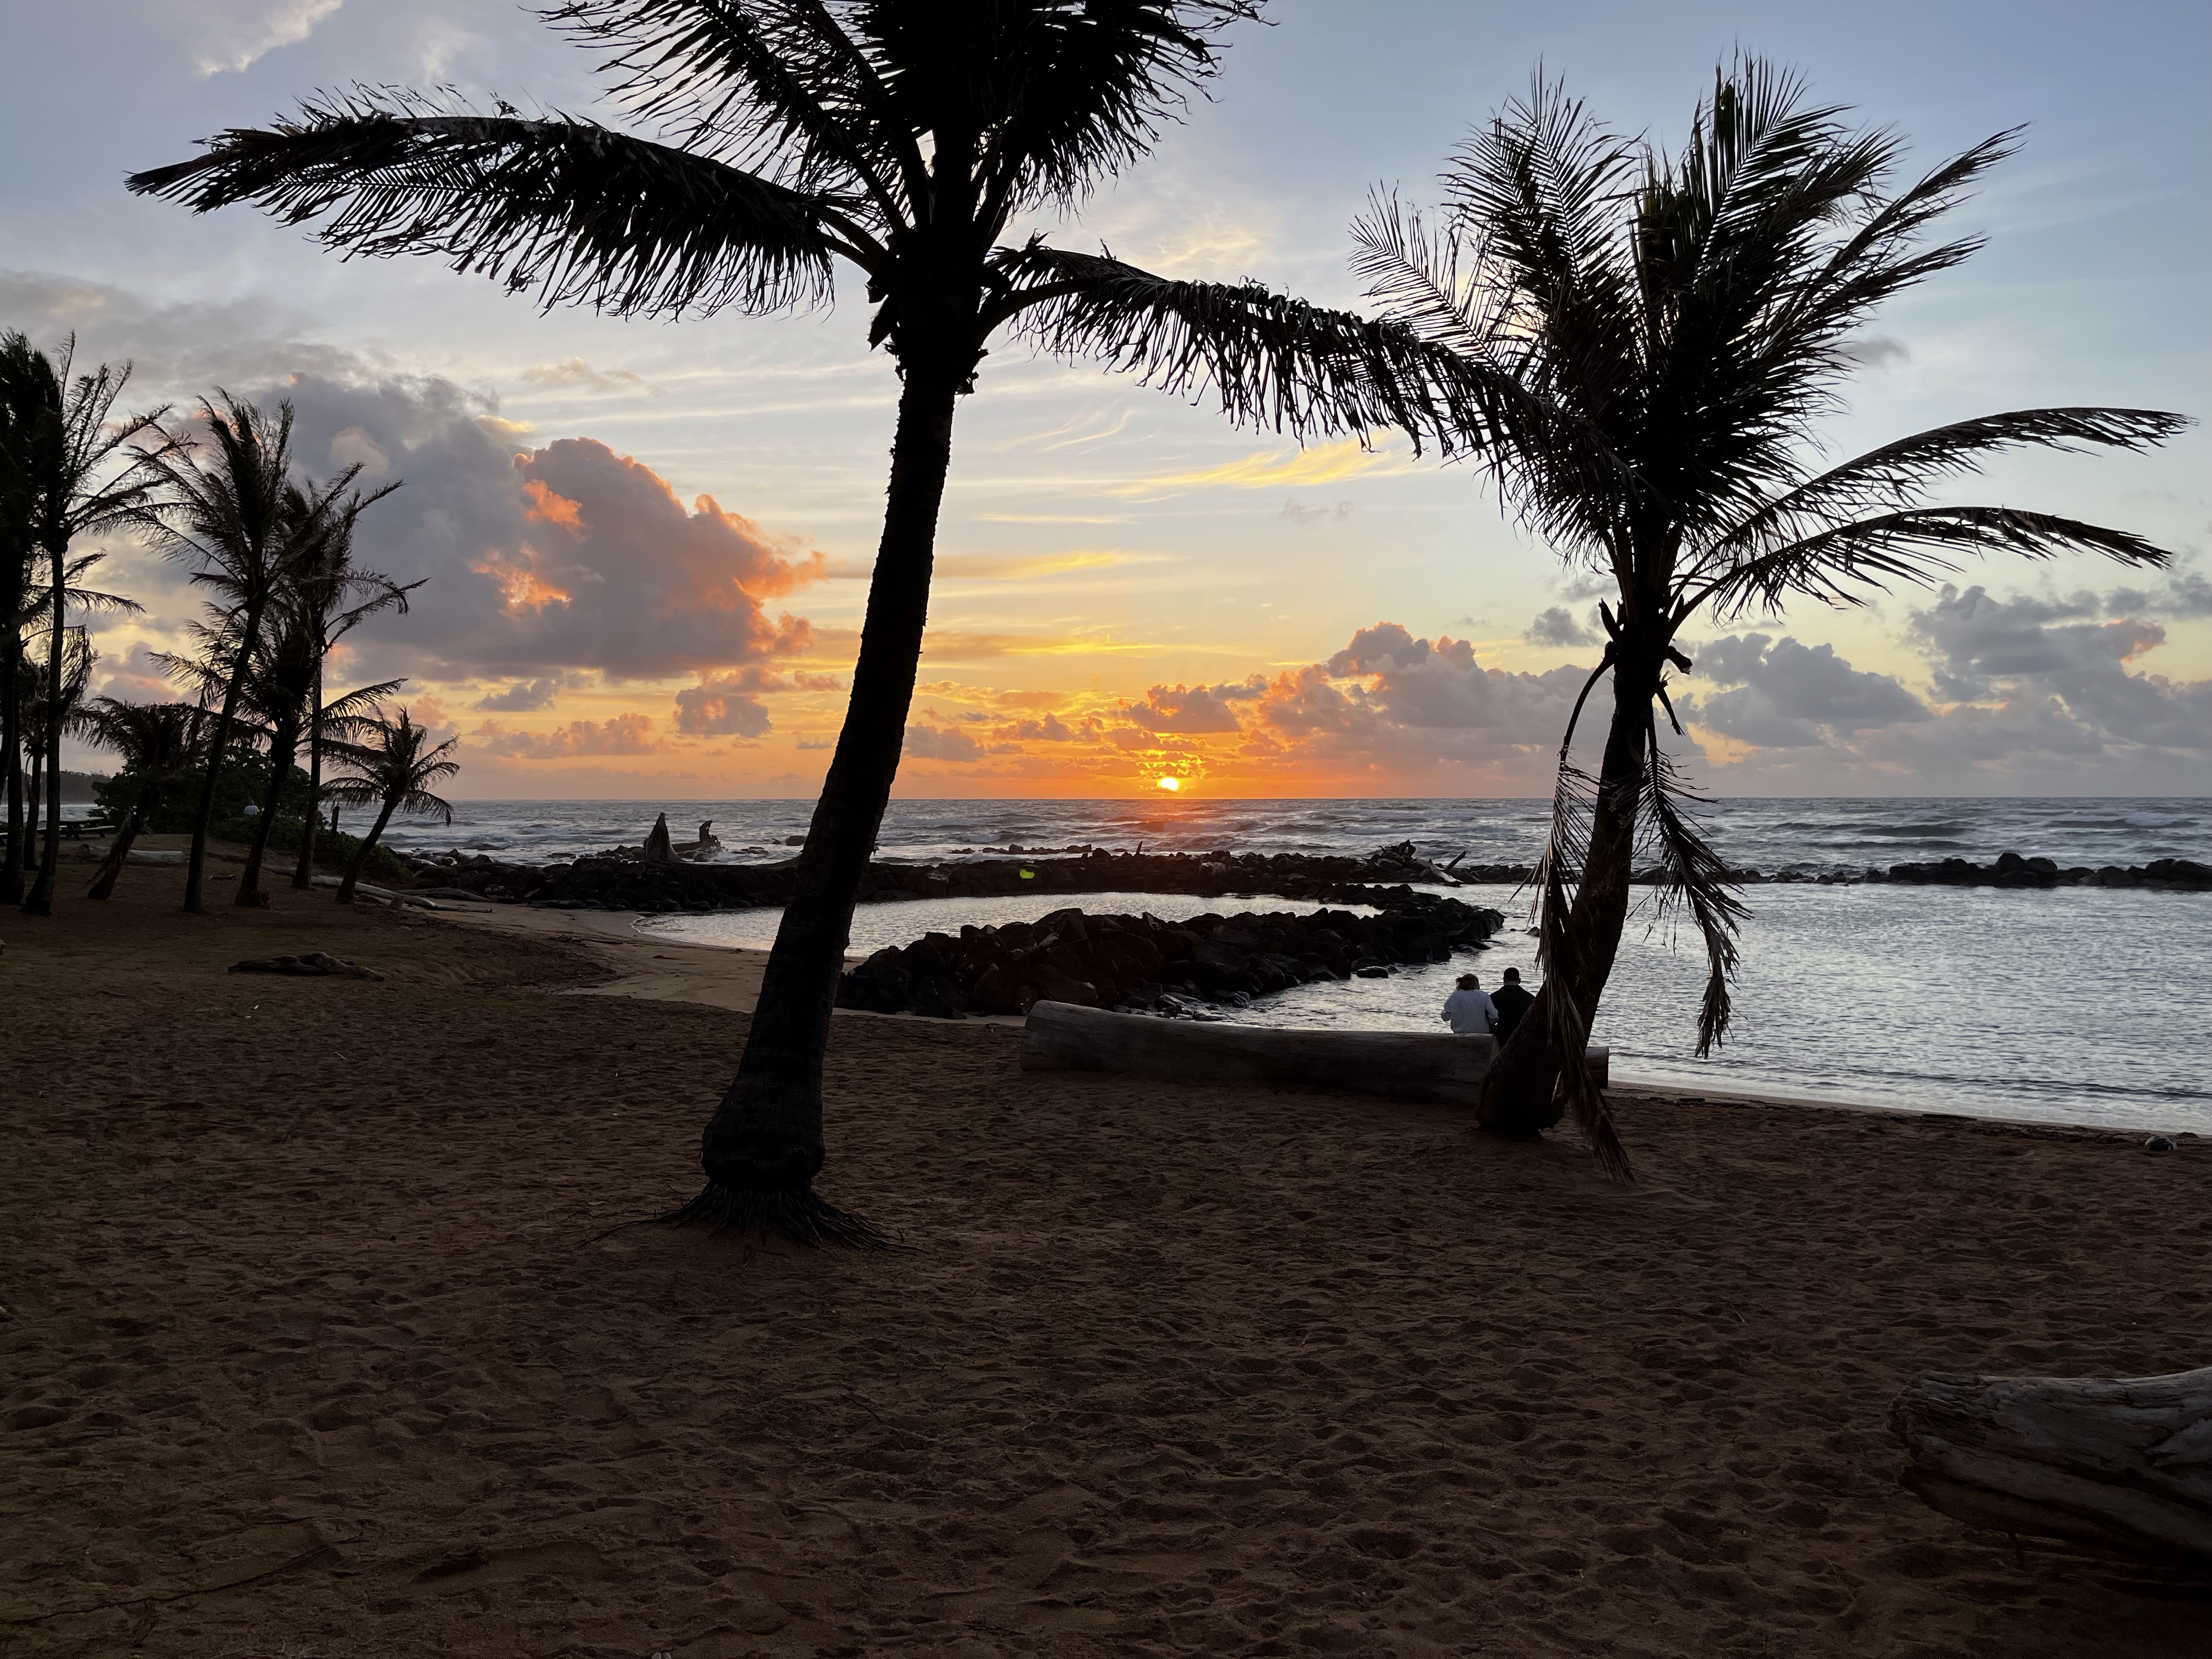 Sunrise on Kauai